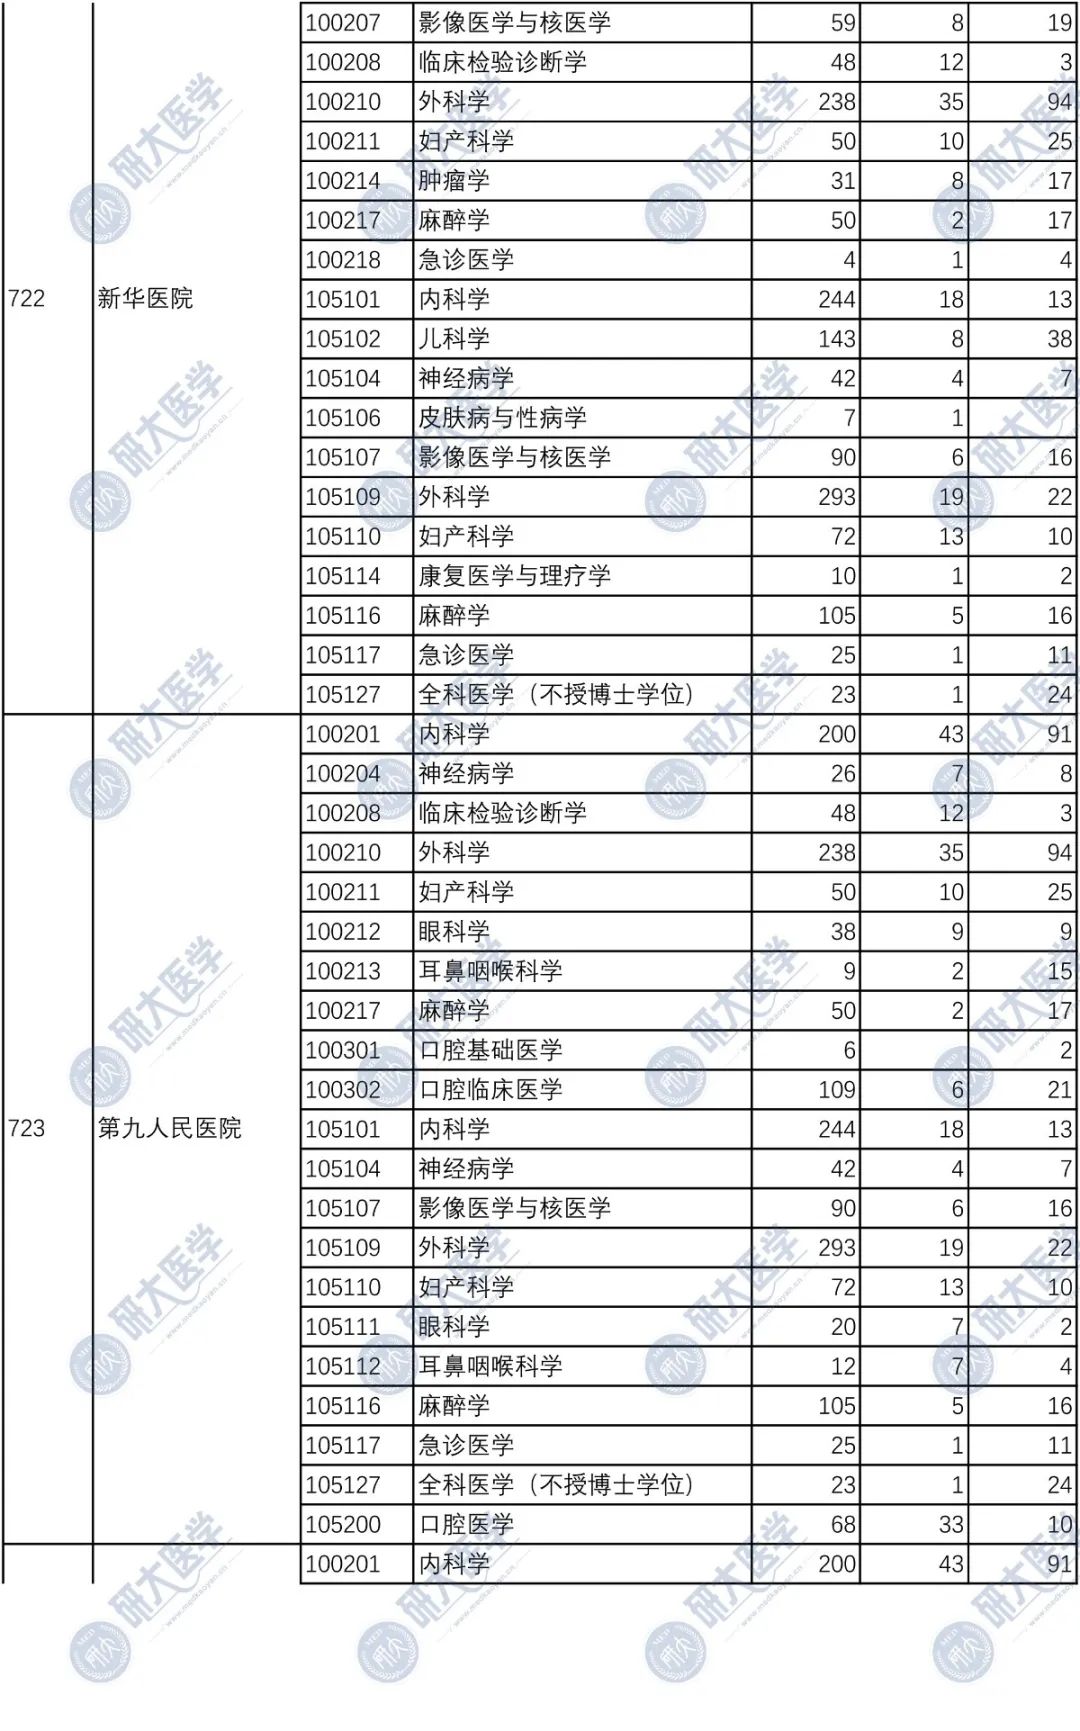 上海交通大学医学院近5年硕士报录比汇总